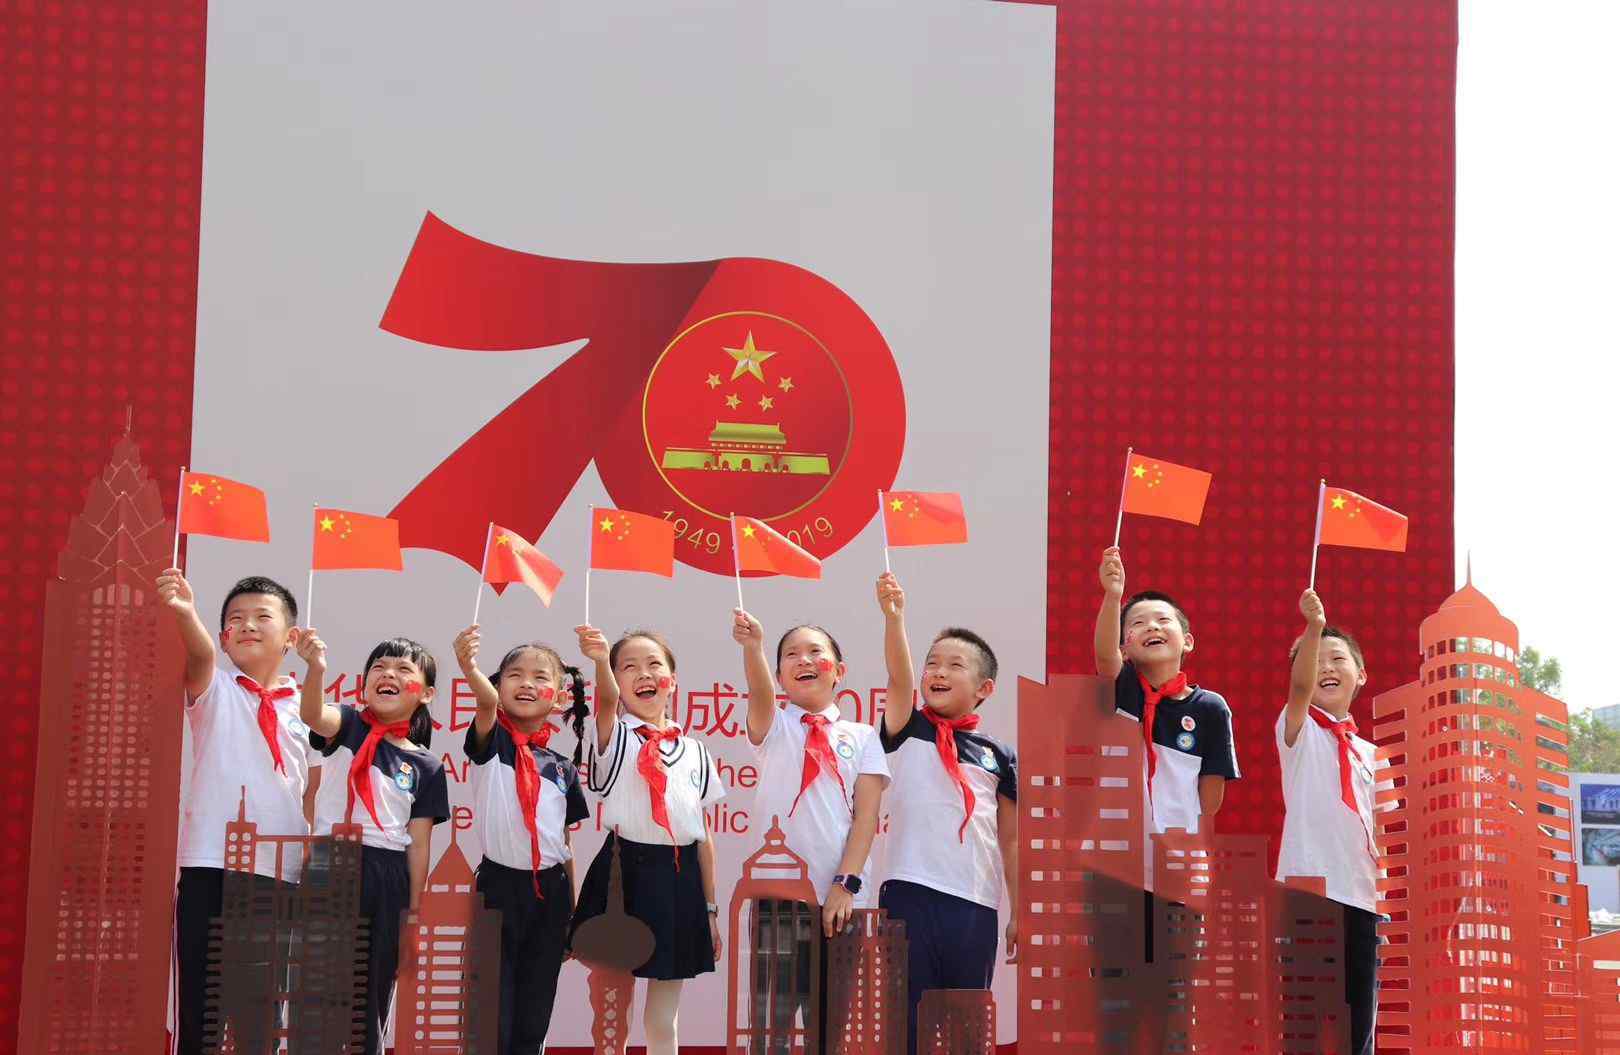 建国70周年图片 温州市庆祝新中国成立70周年图片展成假期热门打卡地